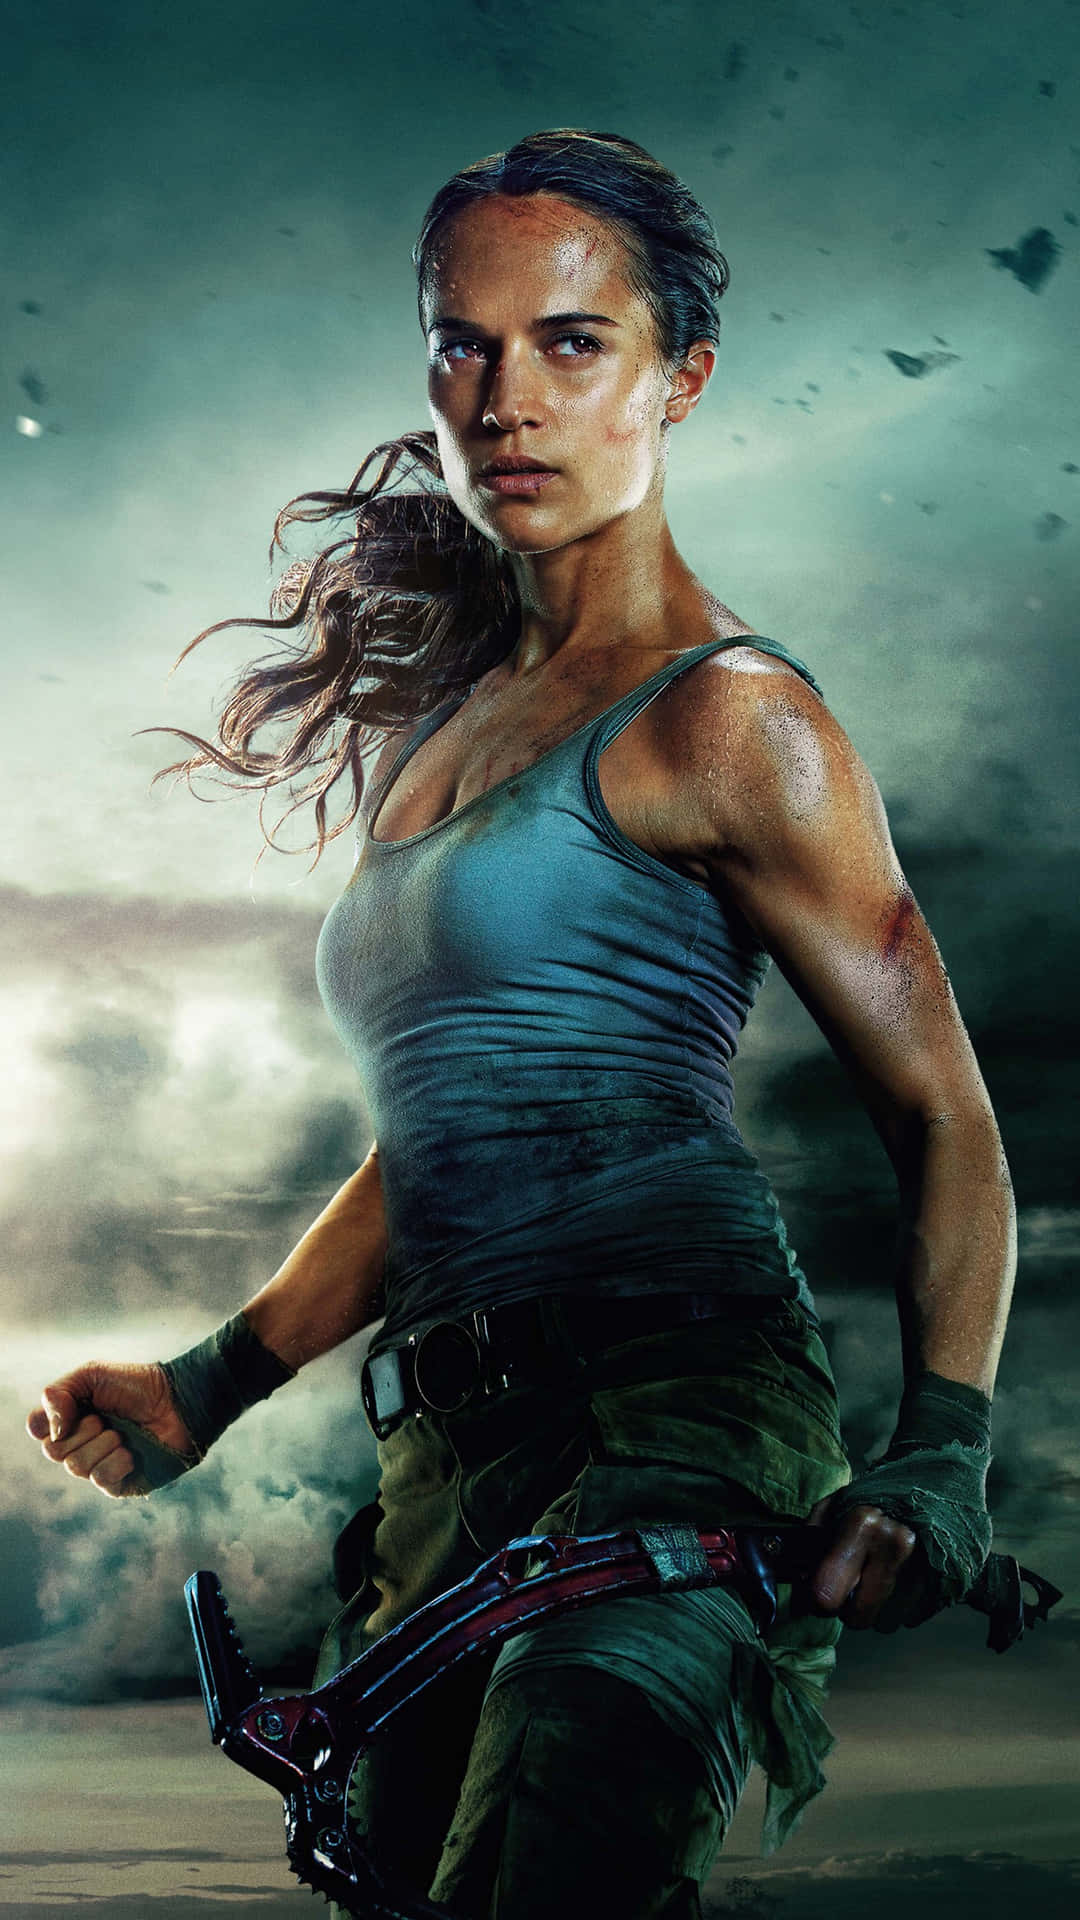 Låsupp Ditt Äventyr Med Tomb Raider På Iphone 5s. Wallpaper